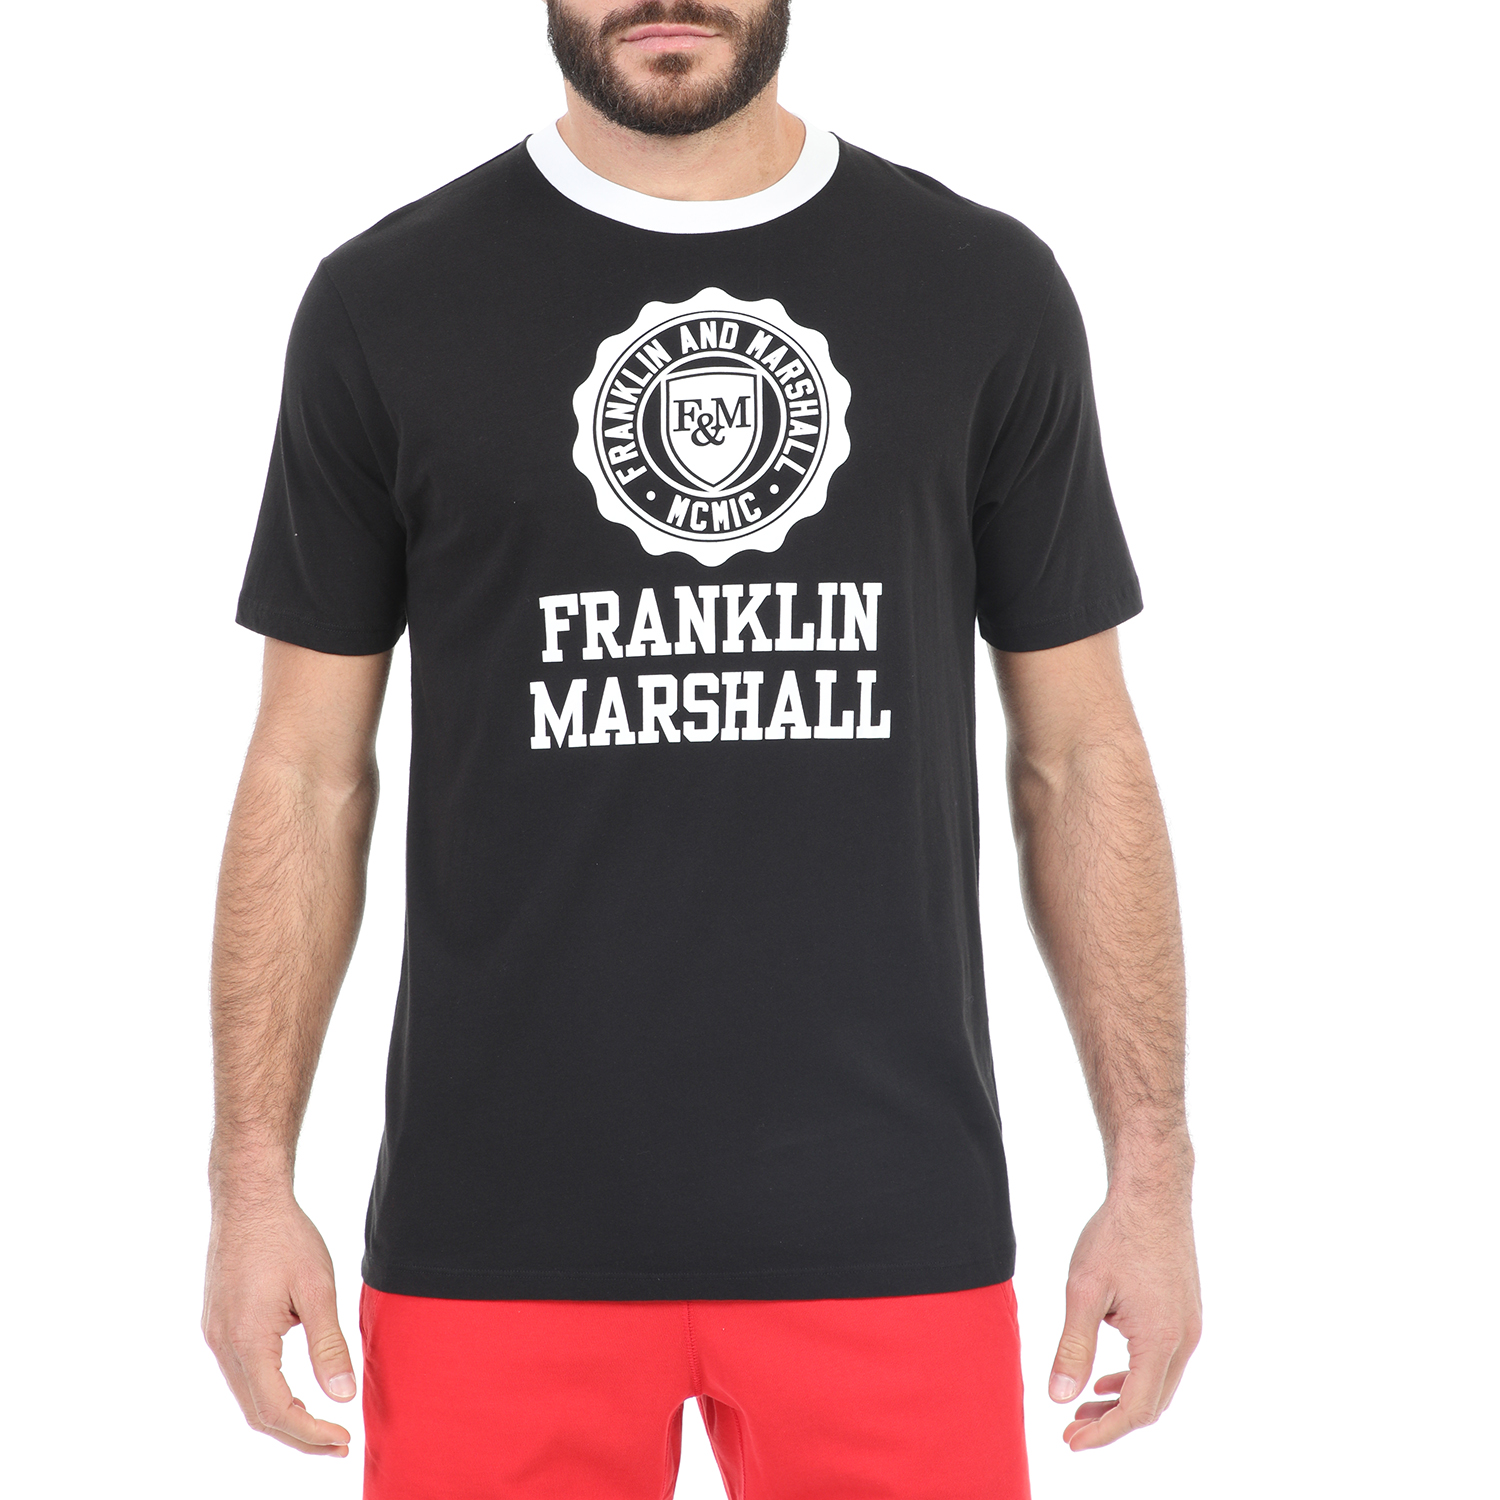 Ανδρικά/Ρούχα/Μπλούζες/Κοντομάνικες FRANKLIN & MARSHALL - Ανδρικό t-shirt FRANKLIN & MARSHALL μαύρο